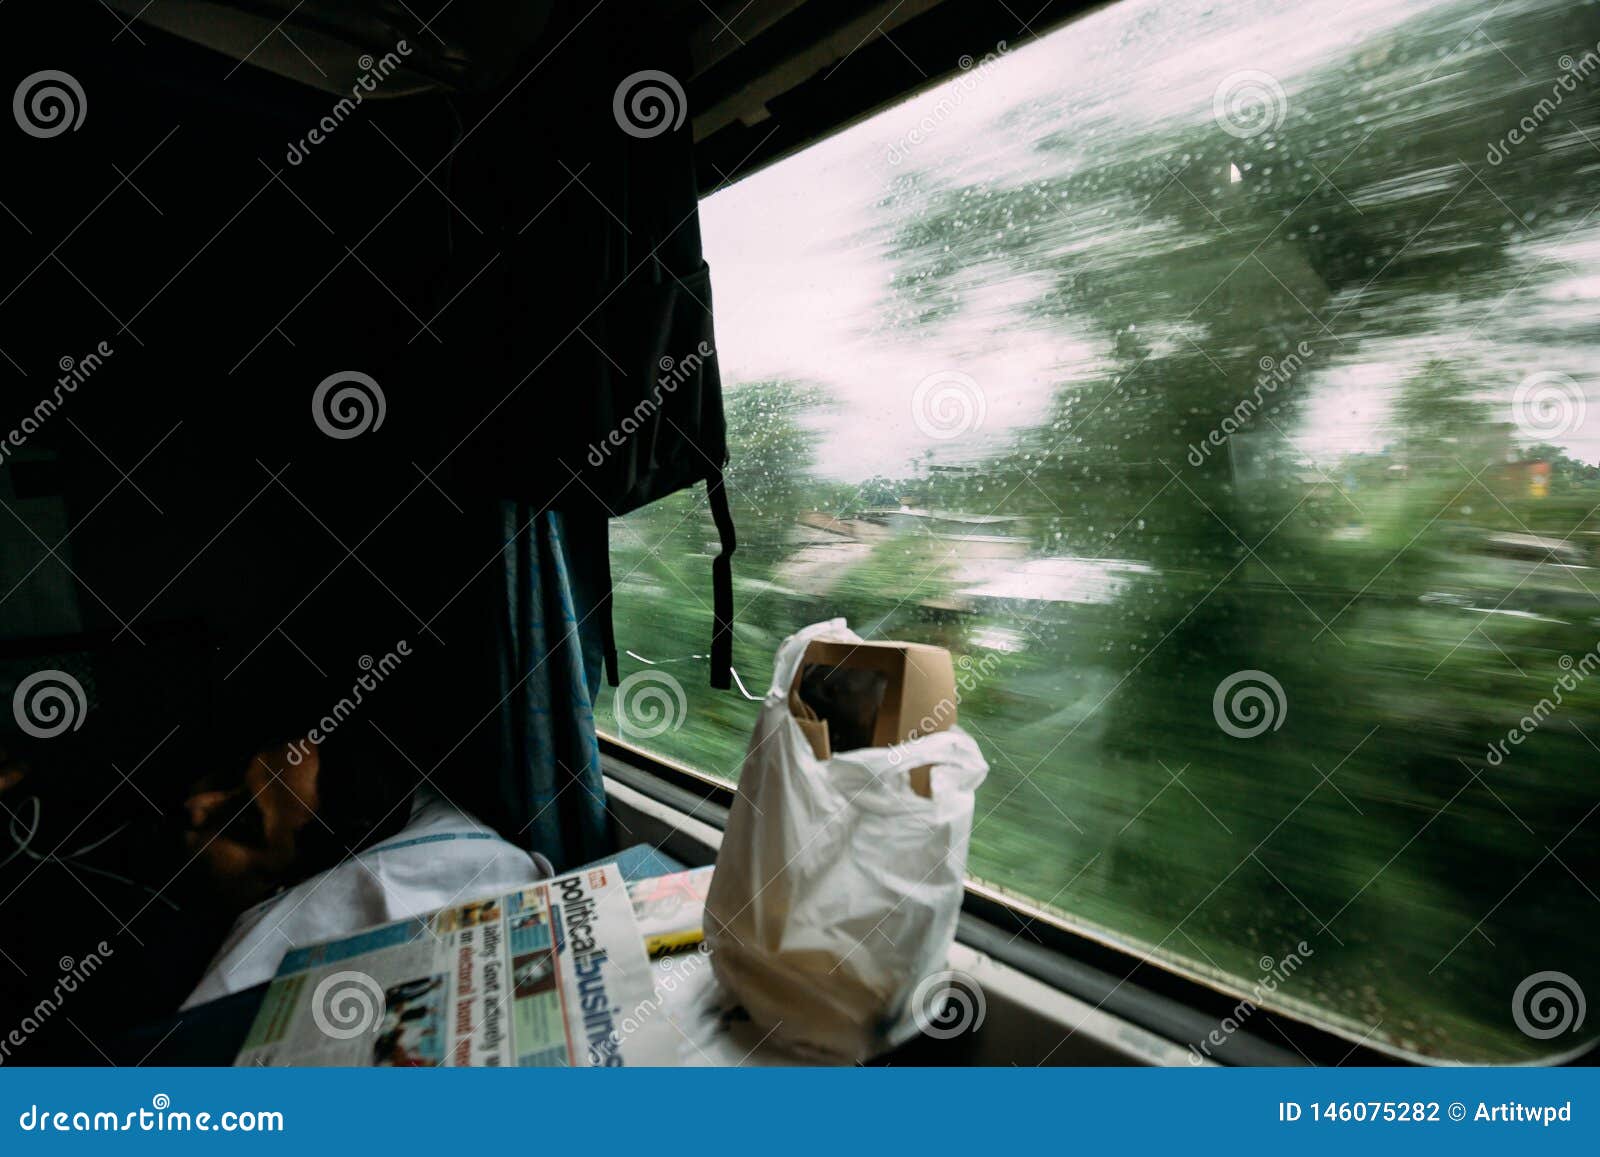 睡觉用食物和报纸的印度人，当移动与在外部时的绿色树行动迷离的火车. 睡觉用食物和报纸的印度人，当移动与在外部的绿色树行动迷离的火车从豪拉连接点火车站在加尔各答，印度时